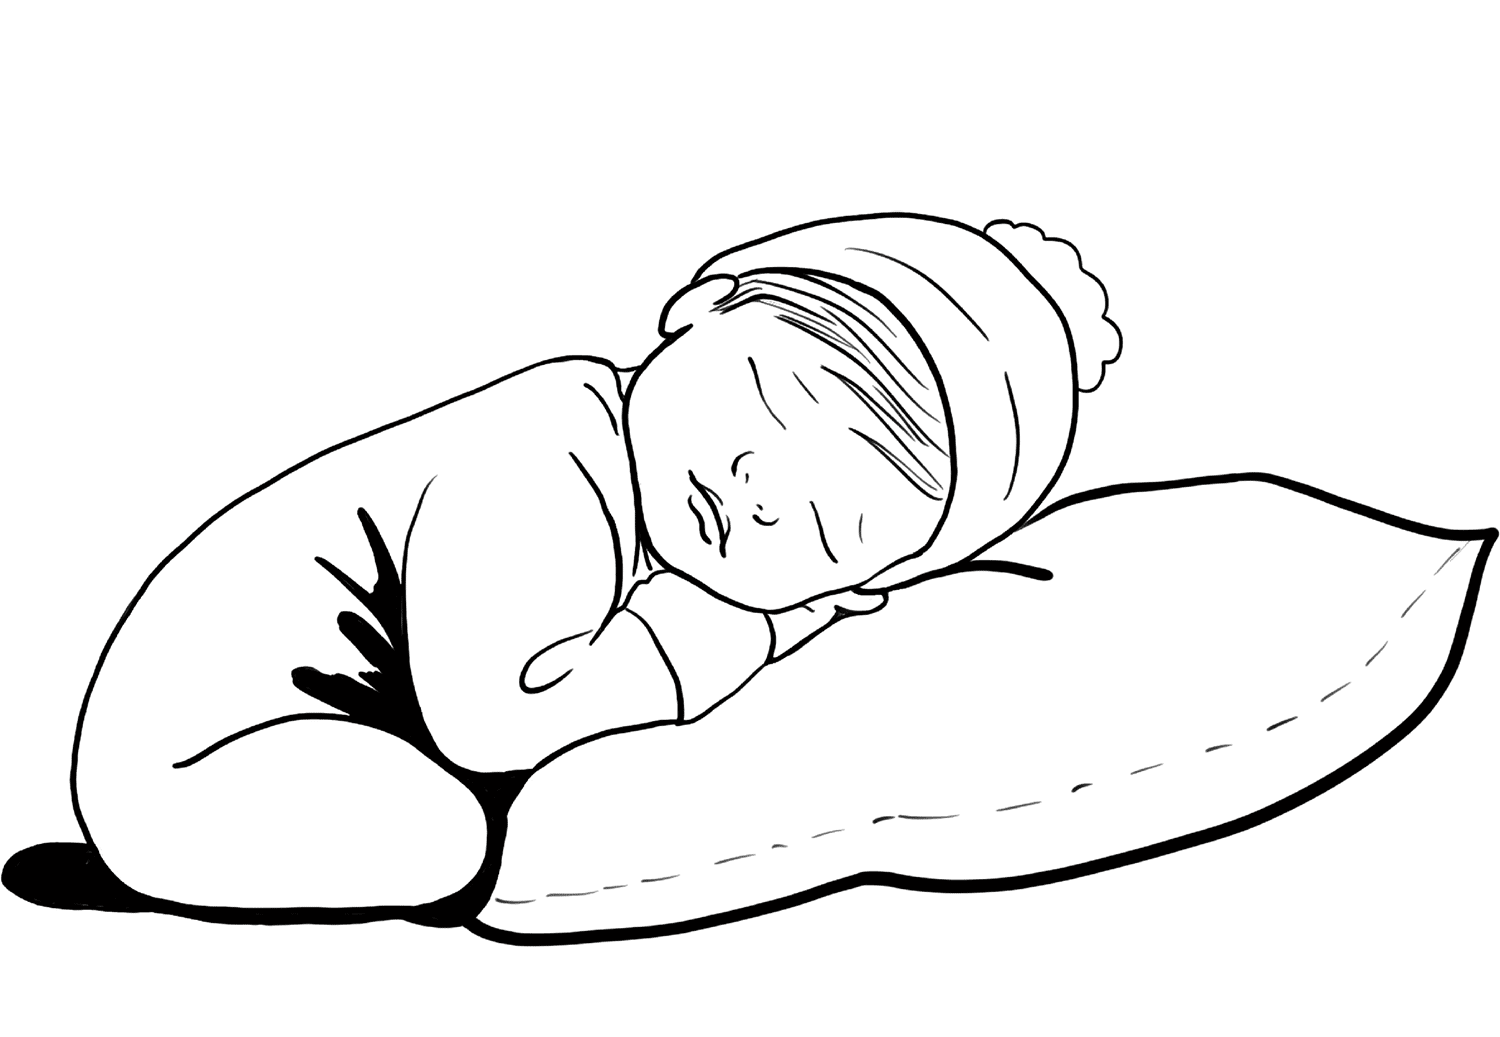 Раскраска младенец. Новорожденный ребенок раскраска. Сон раскраска для детей. Раскраски новорожденных малышей.